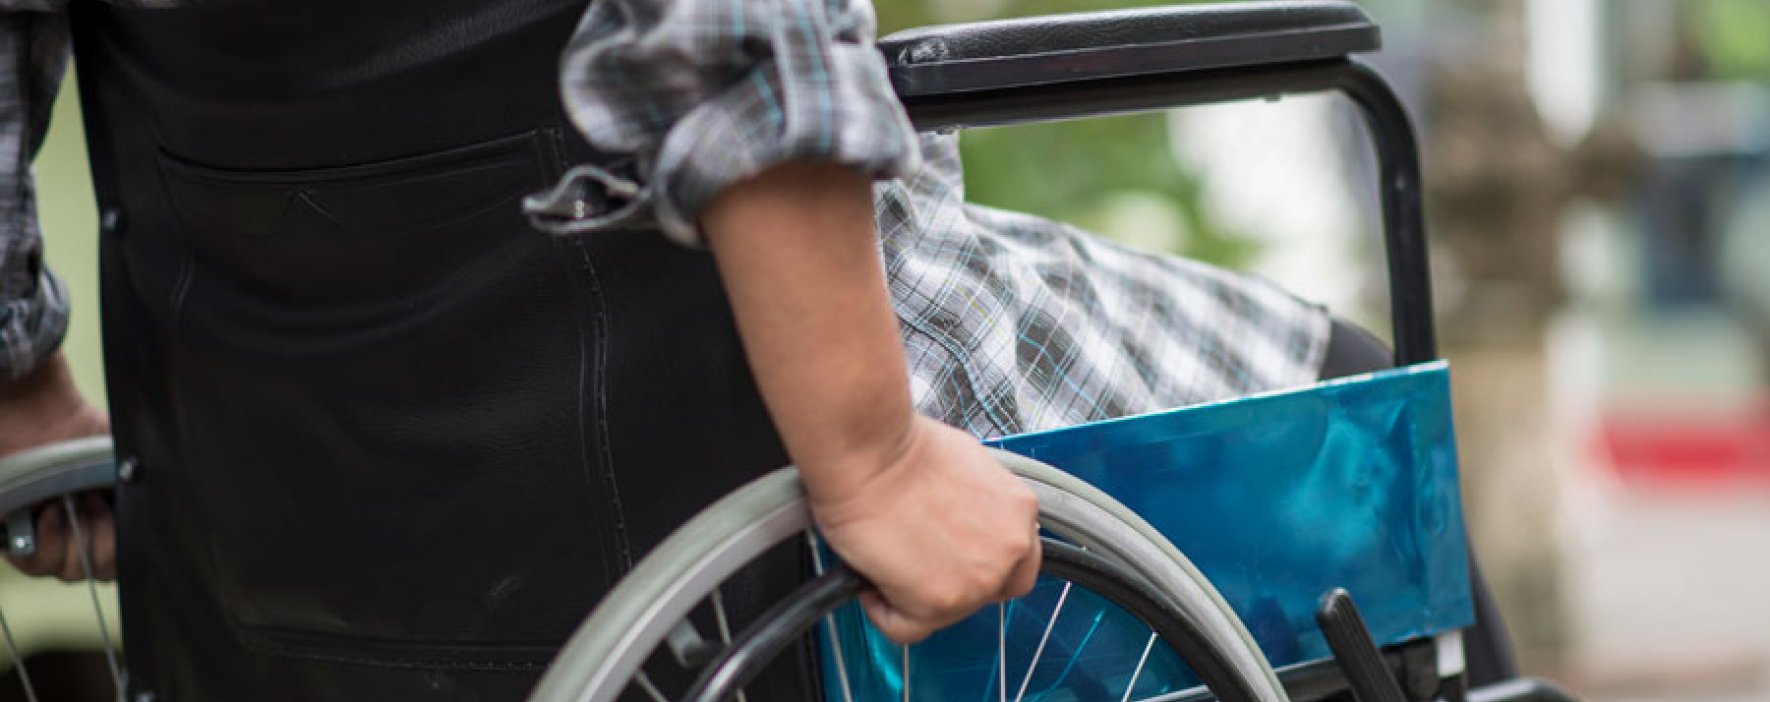 Las personas con discapacidad están excluidas social y laboralmente, según estudio